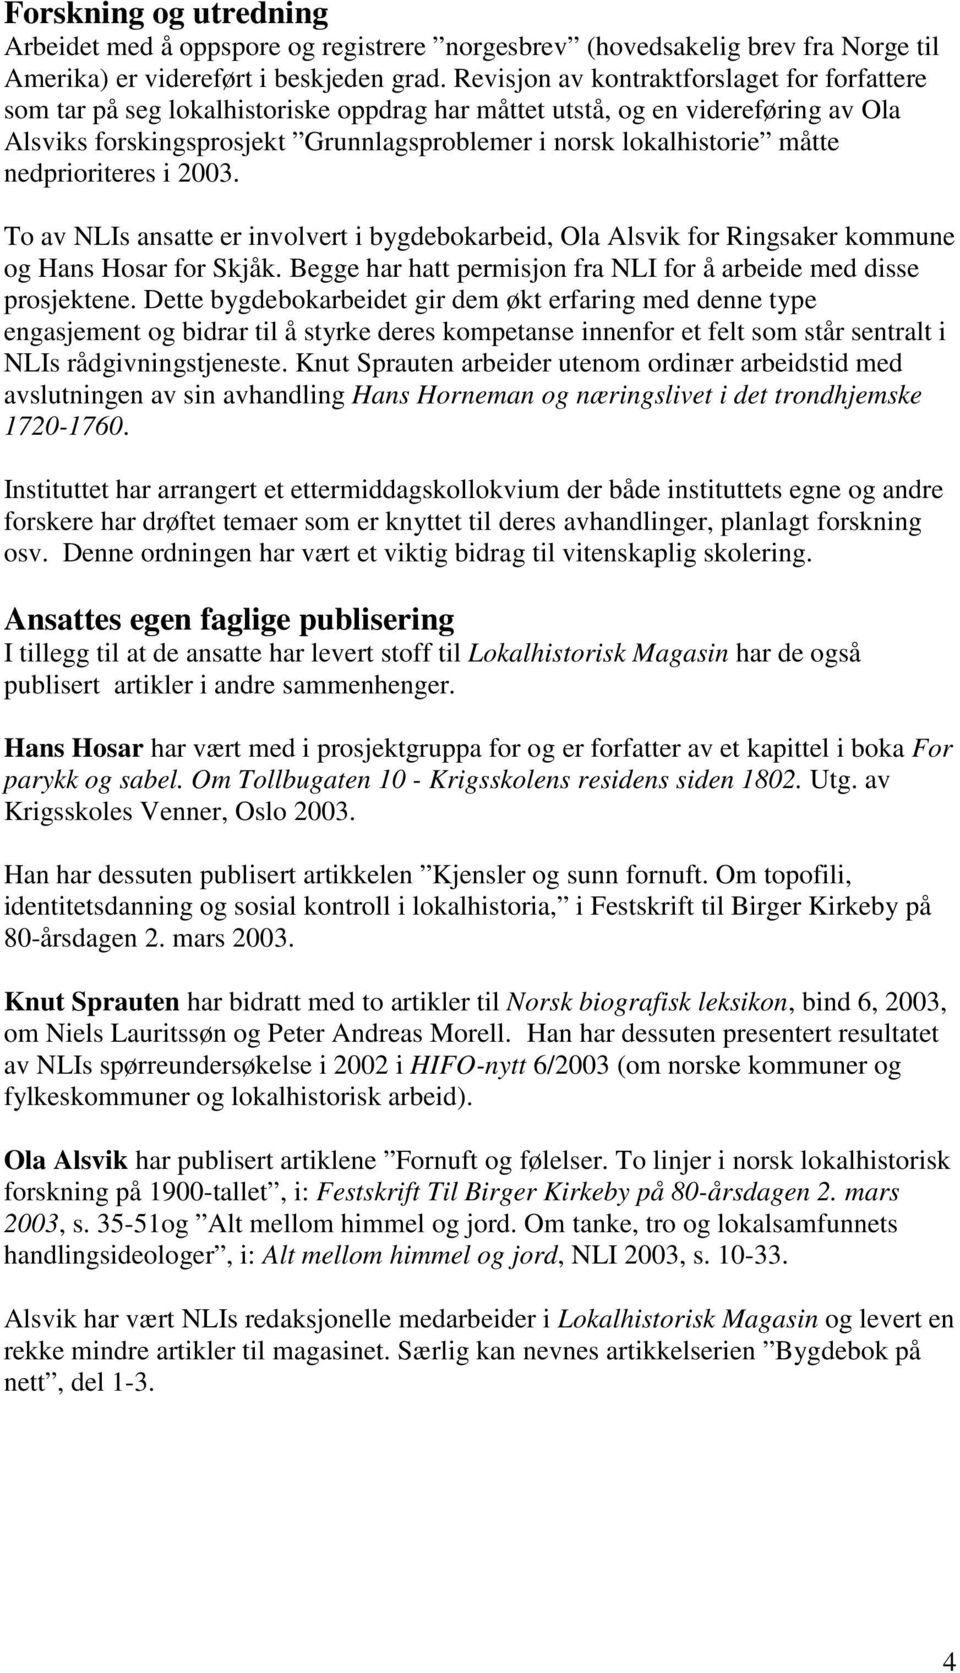 måtte nedprioriteres i 2003. To av NLIs ansatte er involvert i bygdebokarbeid, Ola Alsvik for Ringsaker kommune og Hans Hosar for Skjåk.